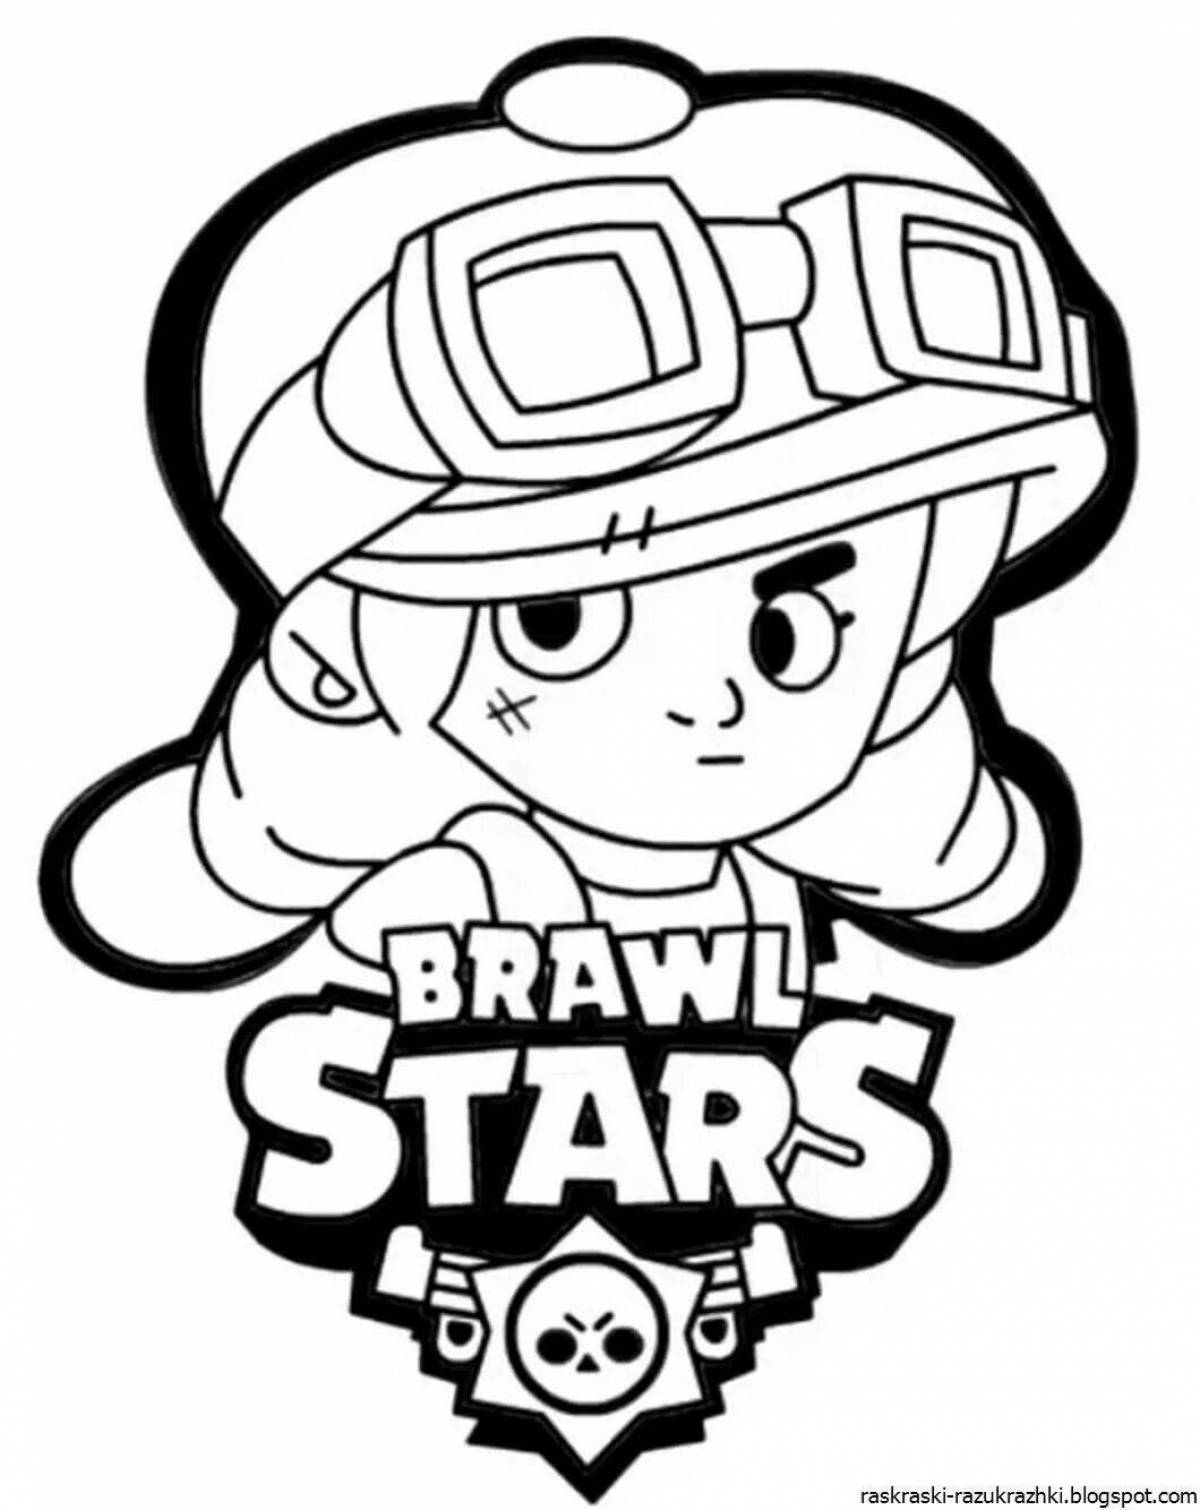 Fun coloring brawl stars brawler icons